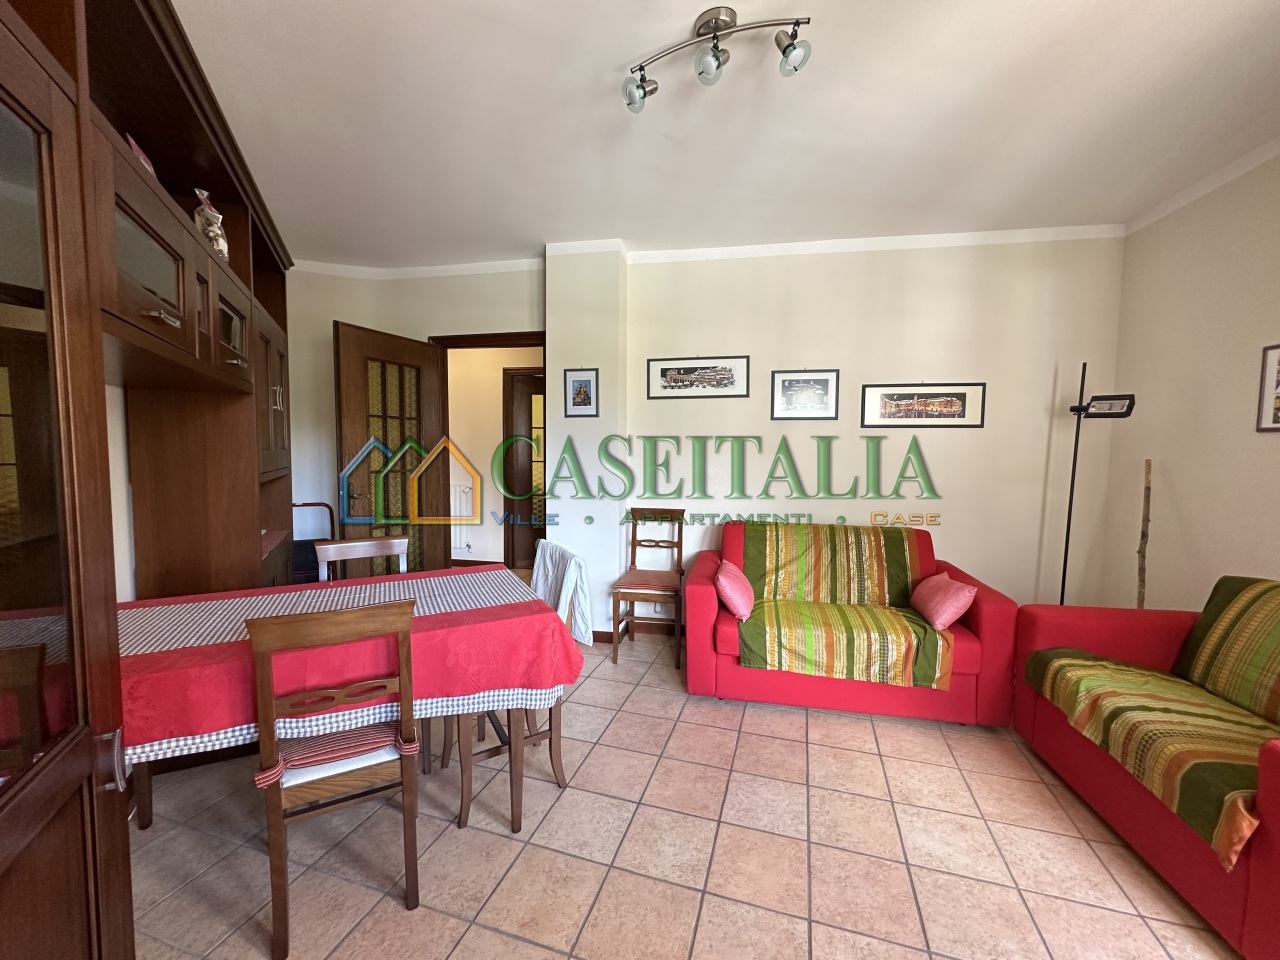 Appartamento in vendita a Chiomonte, 2 locali, prezzo € 38.000 | PortaleAgenzieImmobiliari.it